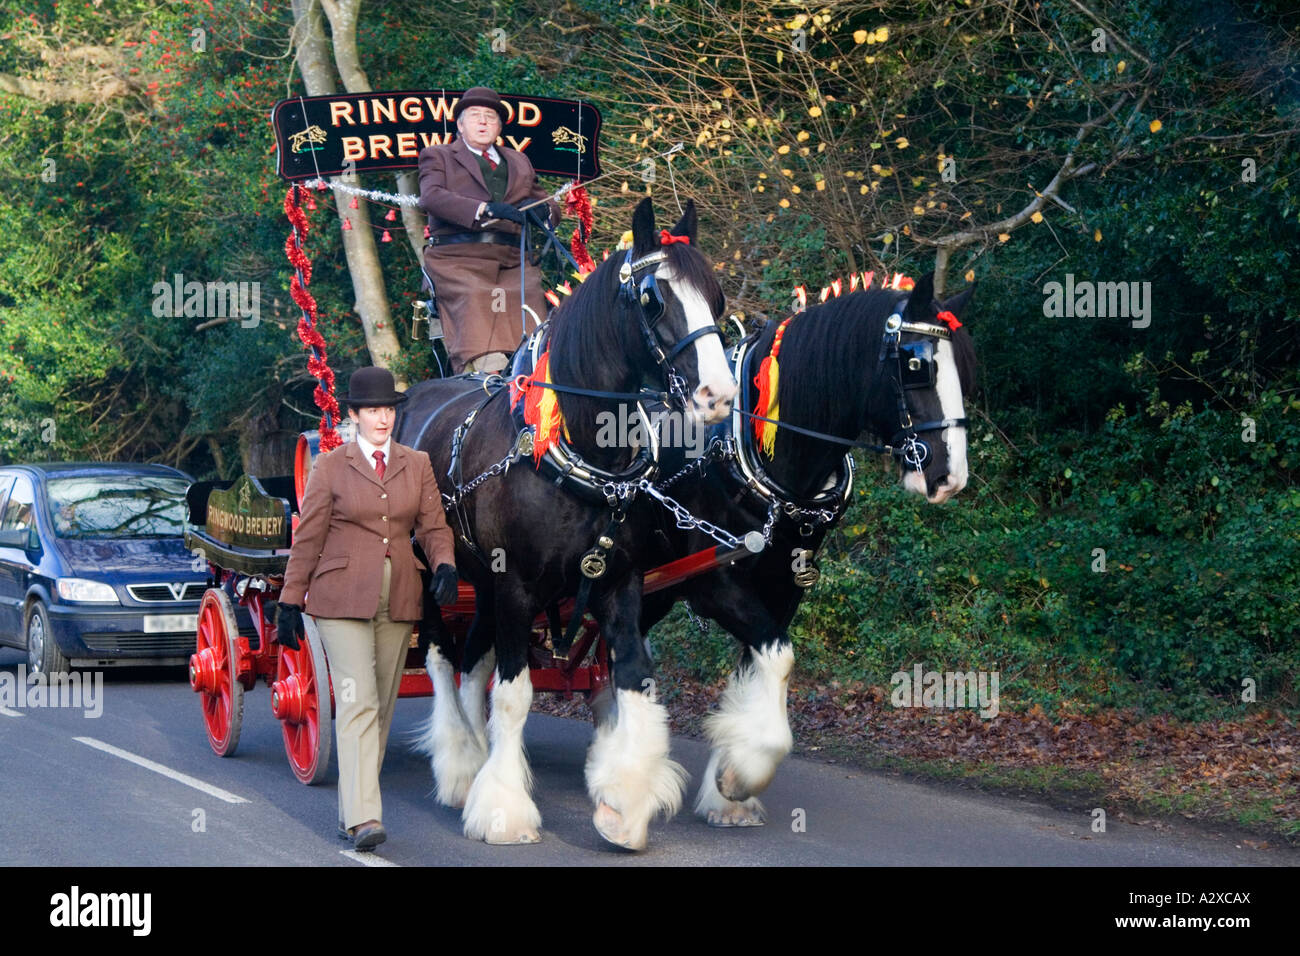 Deux chevaux Shire drays des mariés. Sortie de promotion pour Ringwood Brewery. Le Hampshire. UK. Banque D'Images